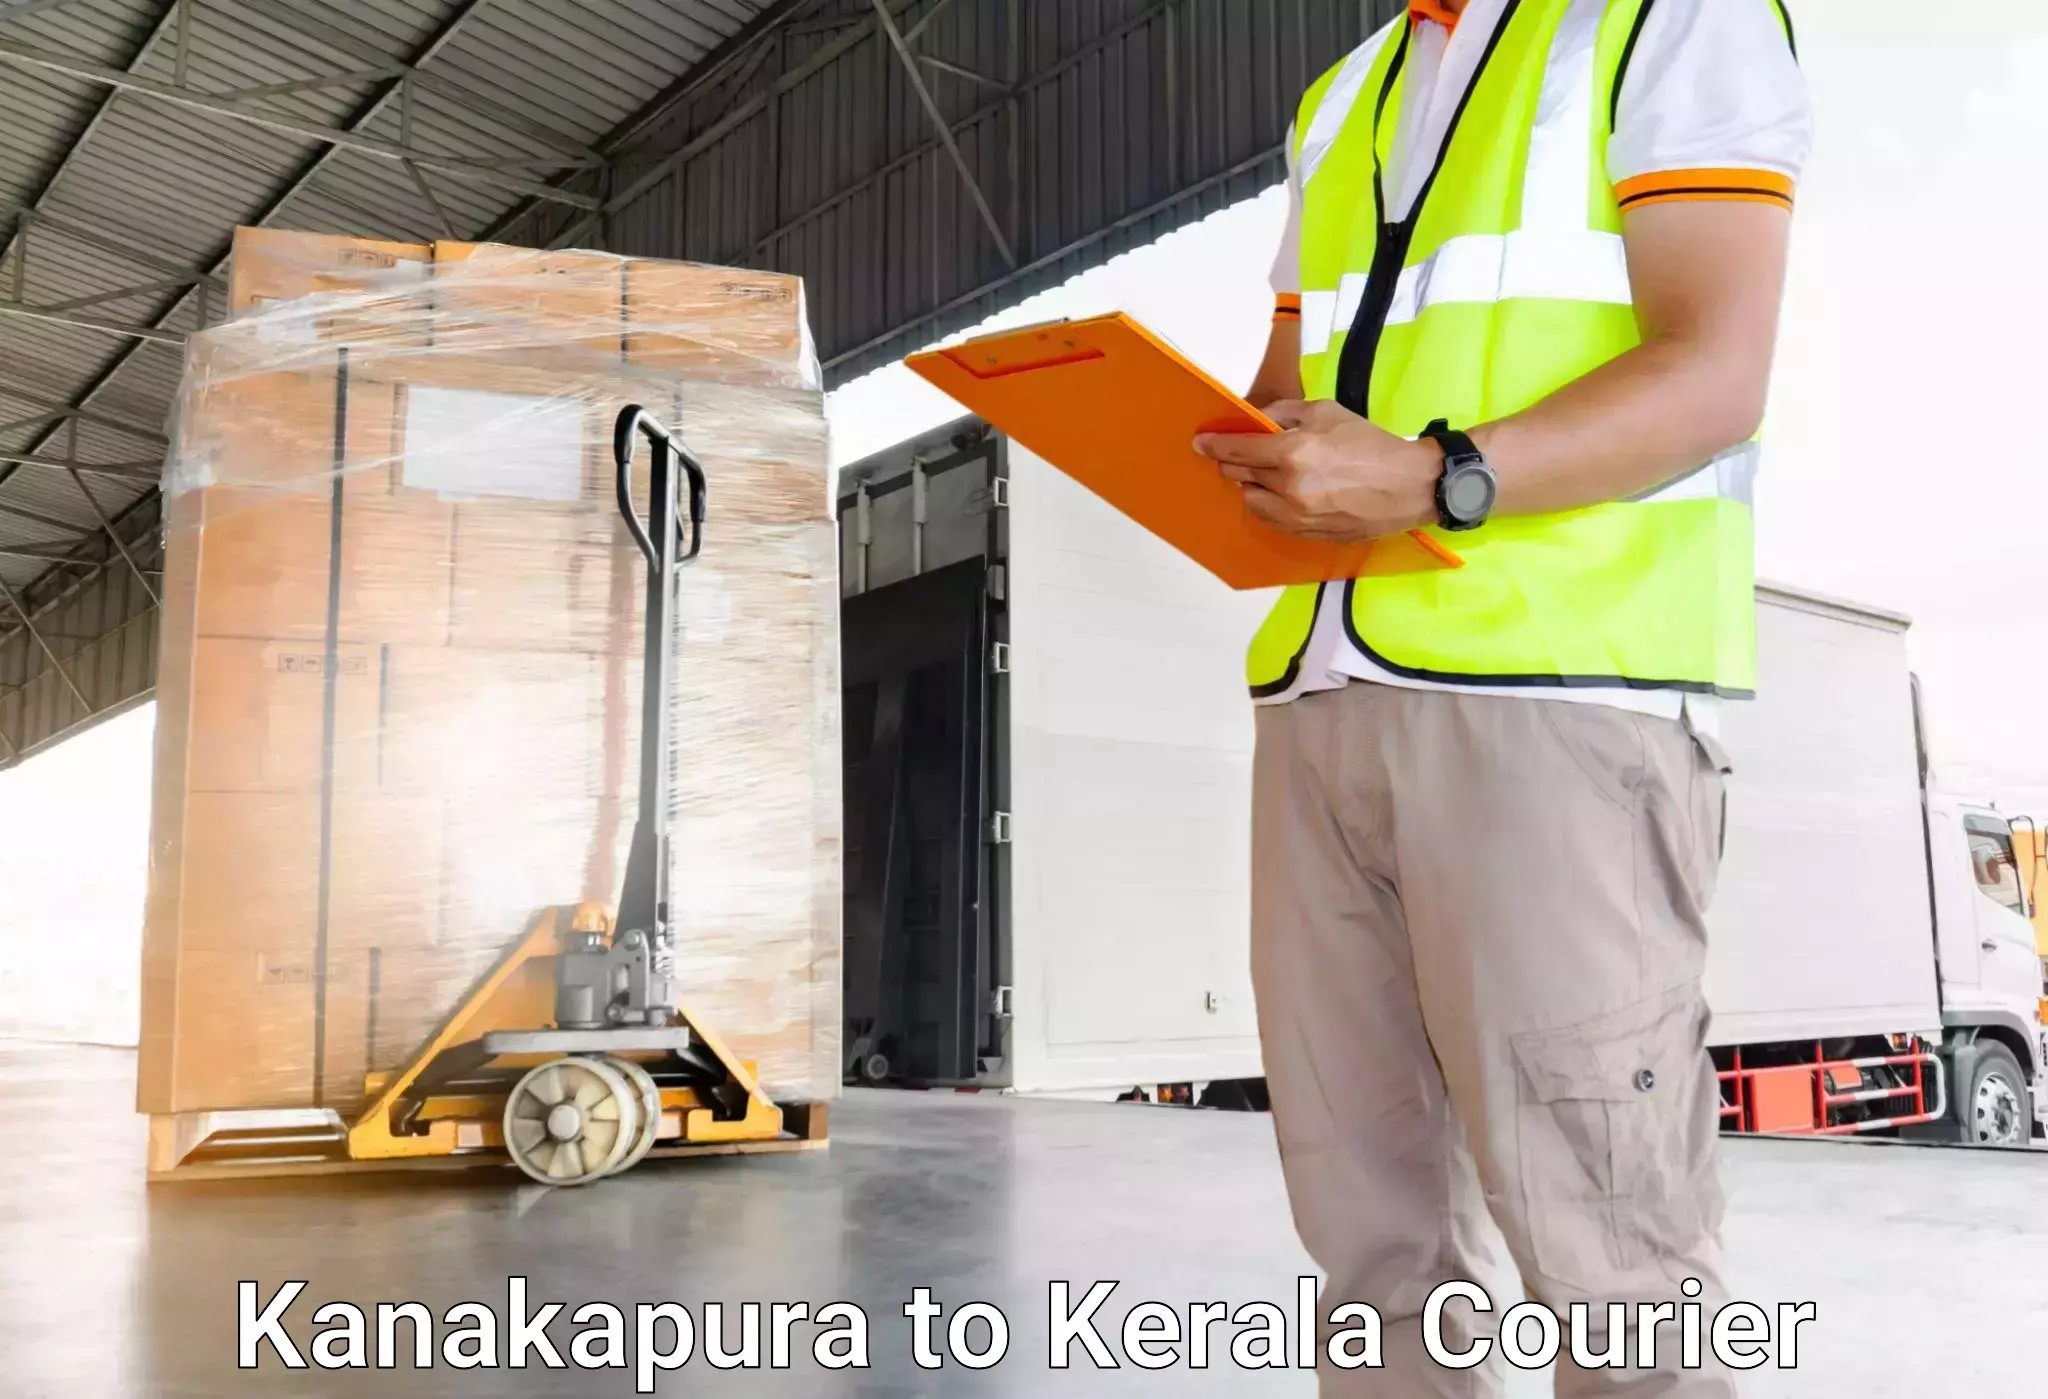 Luggage transport service Kanakapura to Mahe